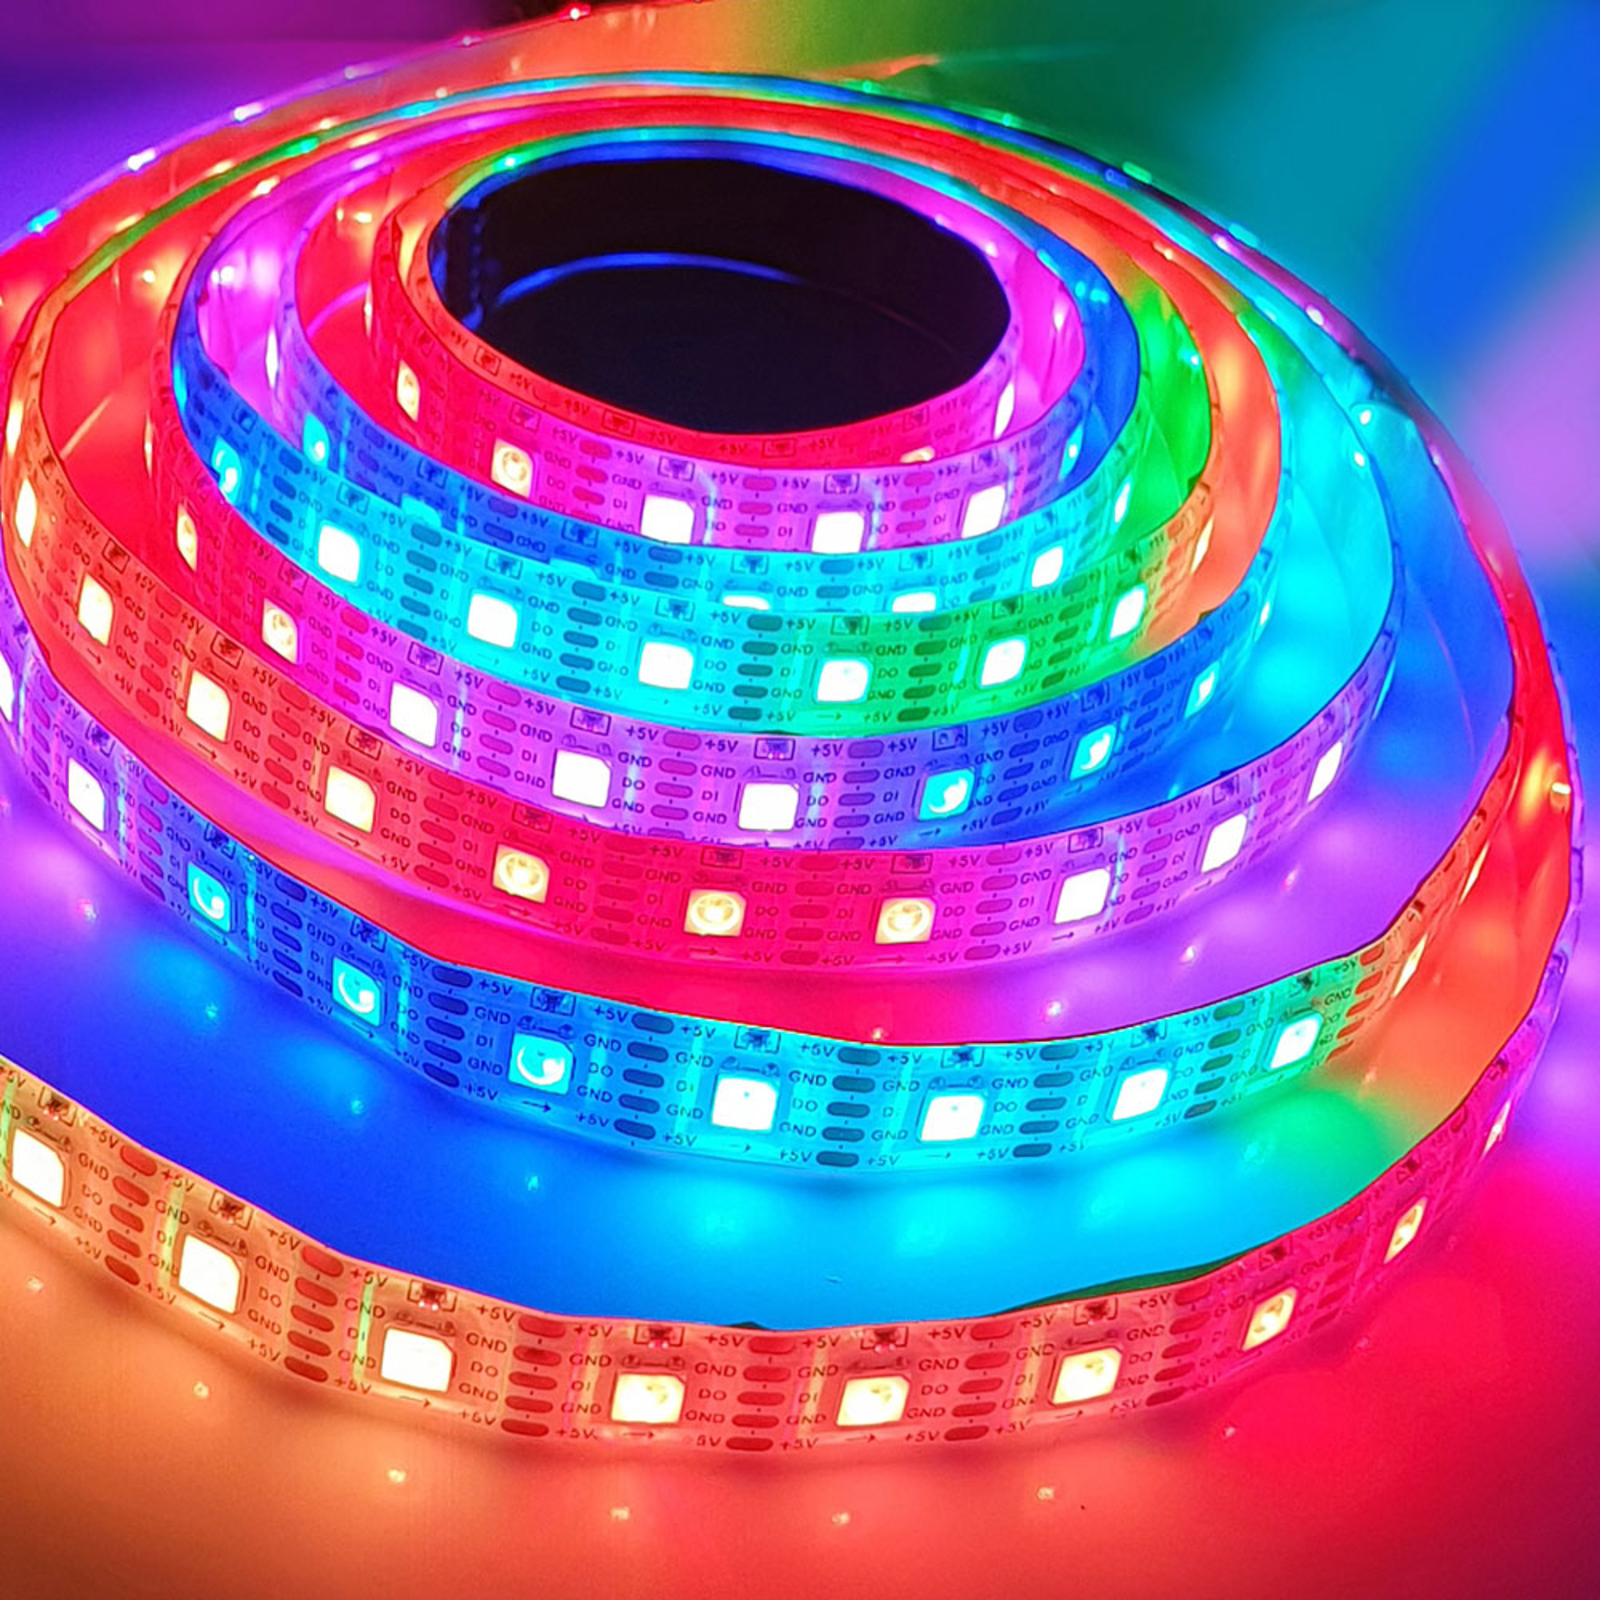 Cololight Strip udvidelse, 60 LED’er pr. meter